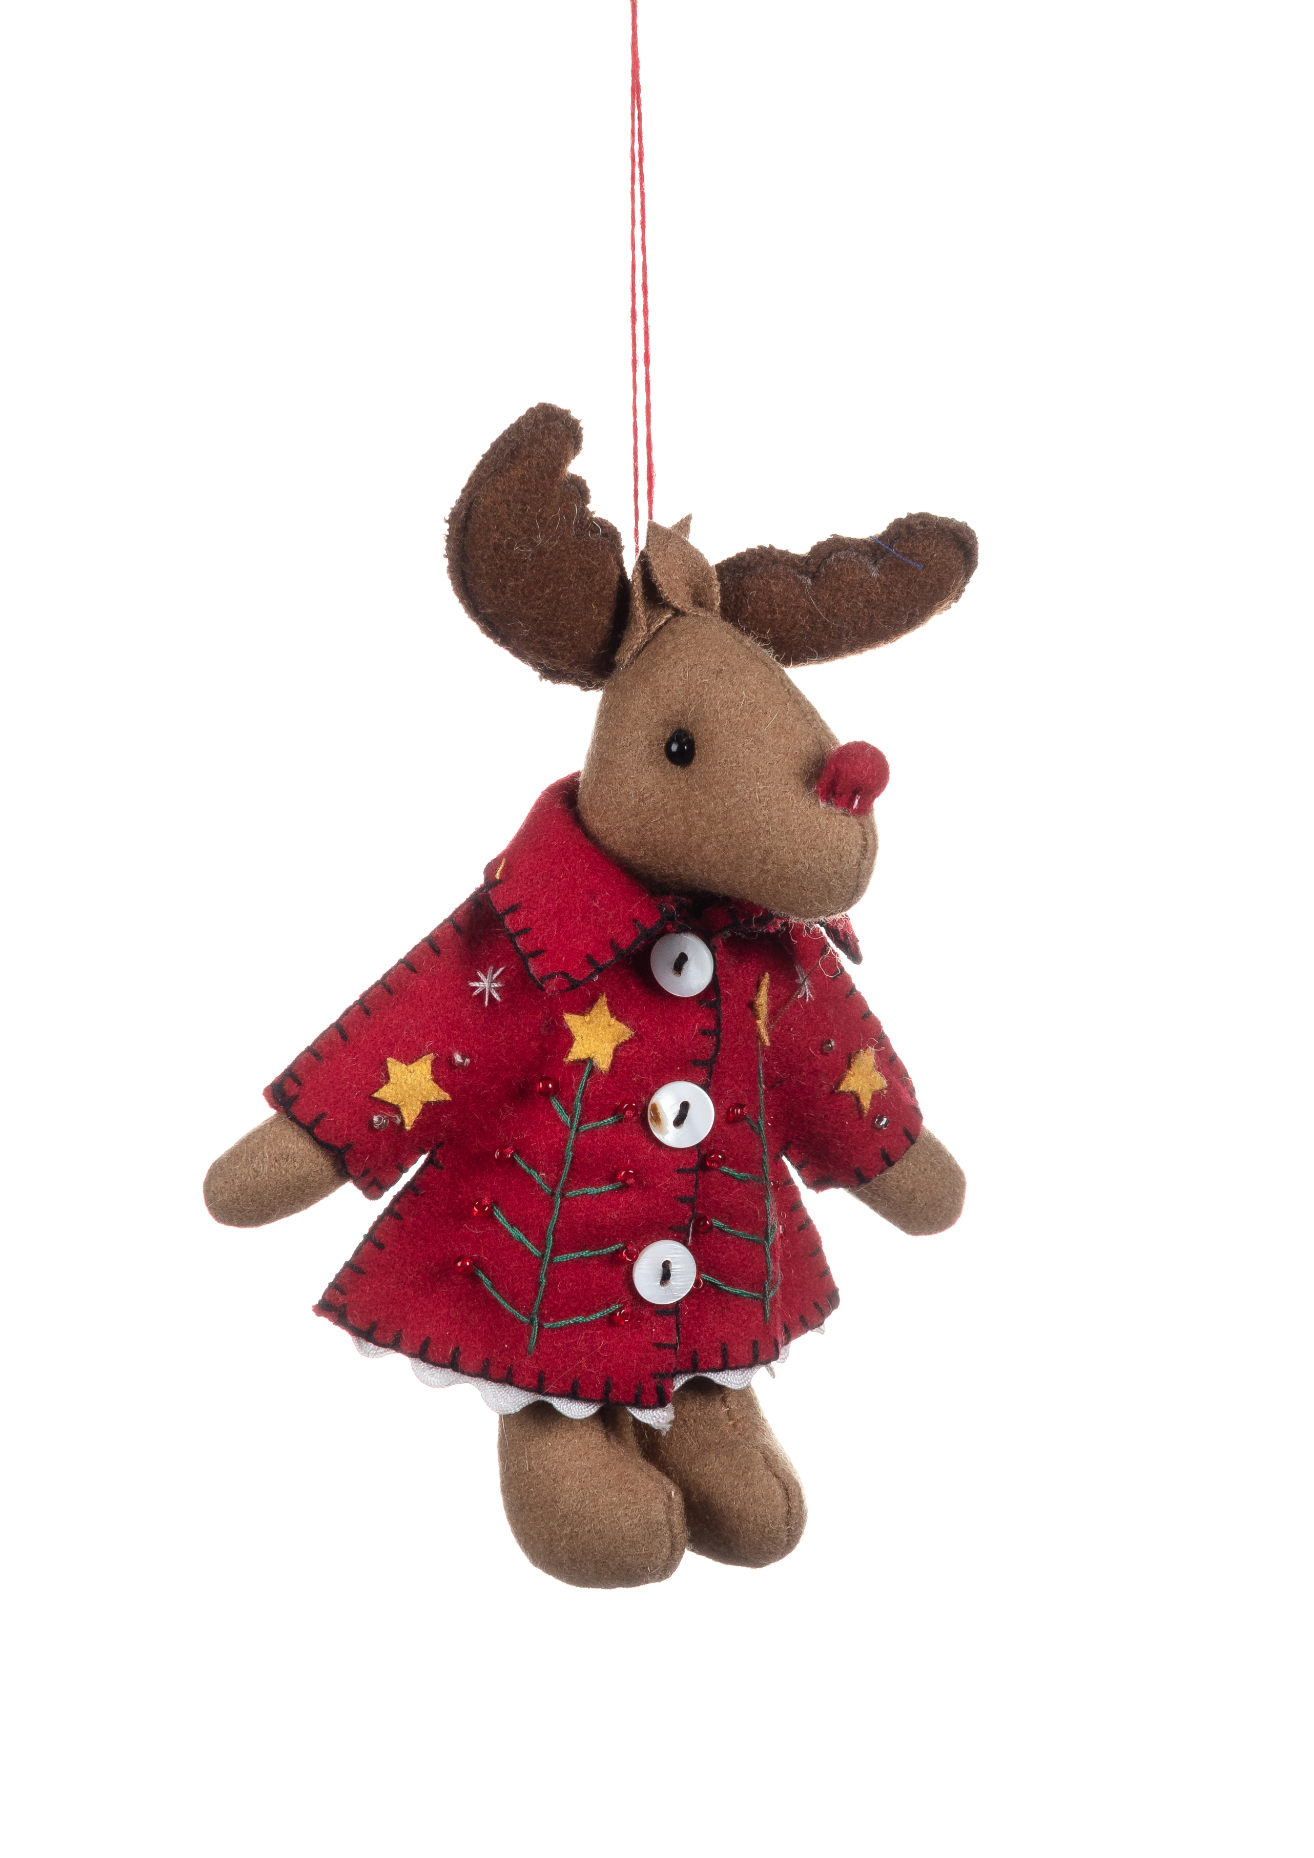 Shoeless Joe Christmas Reindeer in a Red Coat